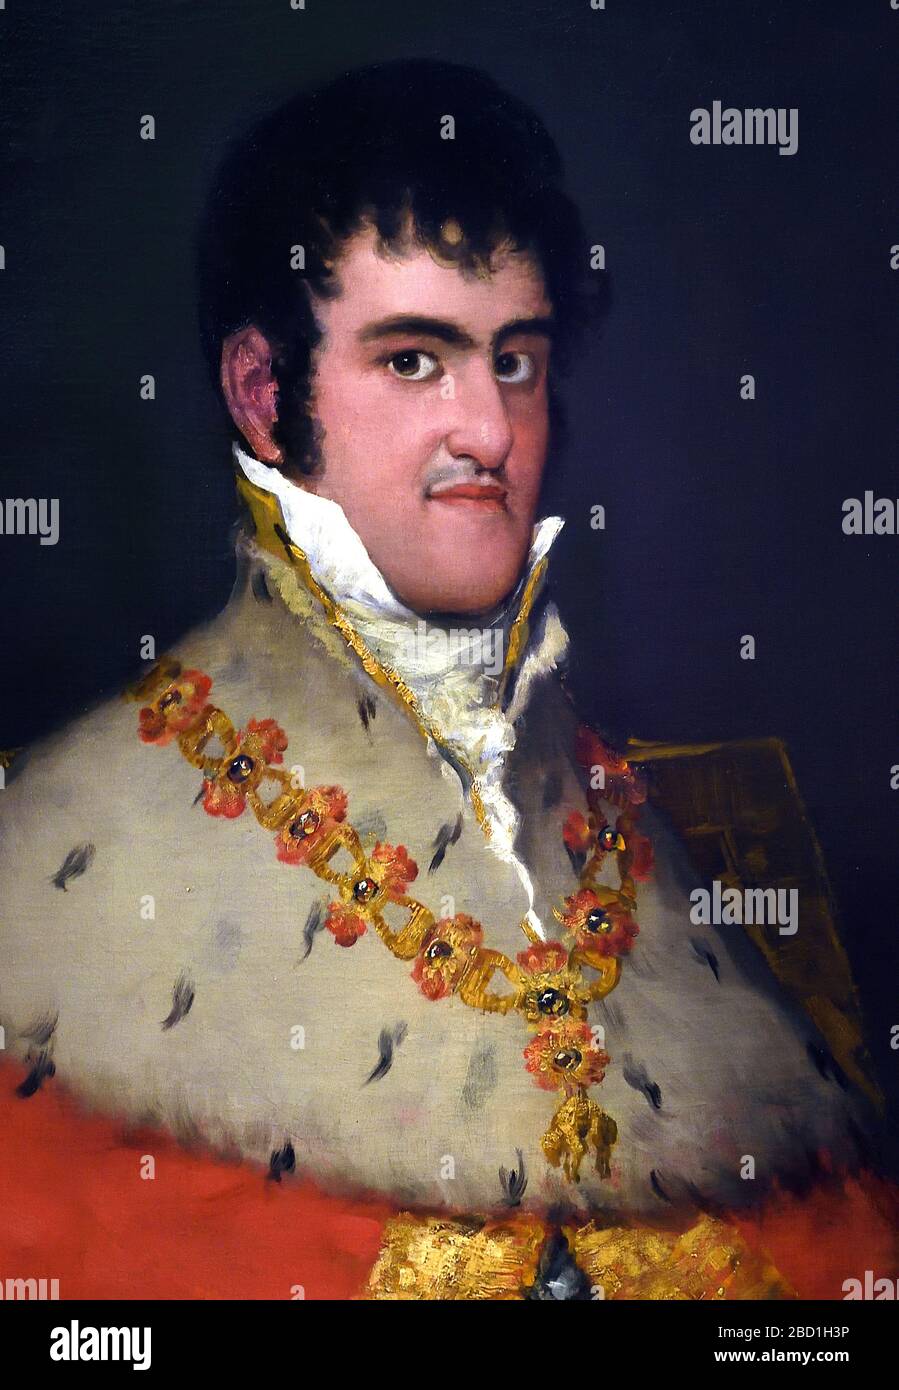 FRANCISCO JOSÉ DE GOYA Y LUCIENTES (1746-1828) 18/19th, century, Spain, Spanish, Retrato del Rey Fernando VII de España (1784-1833) - Portrait of King Ferdinand VII of Spain (1784-1833). Stock Photo